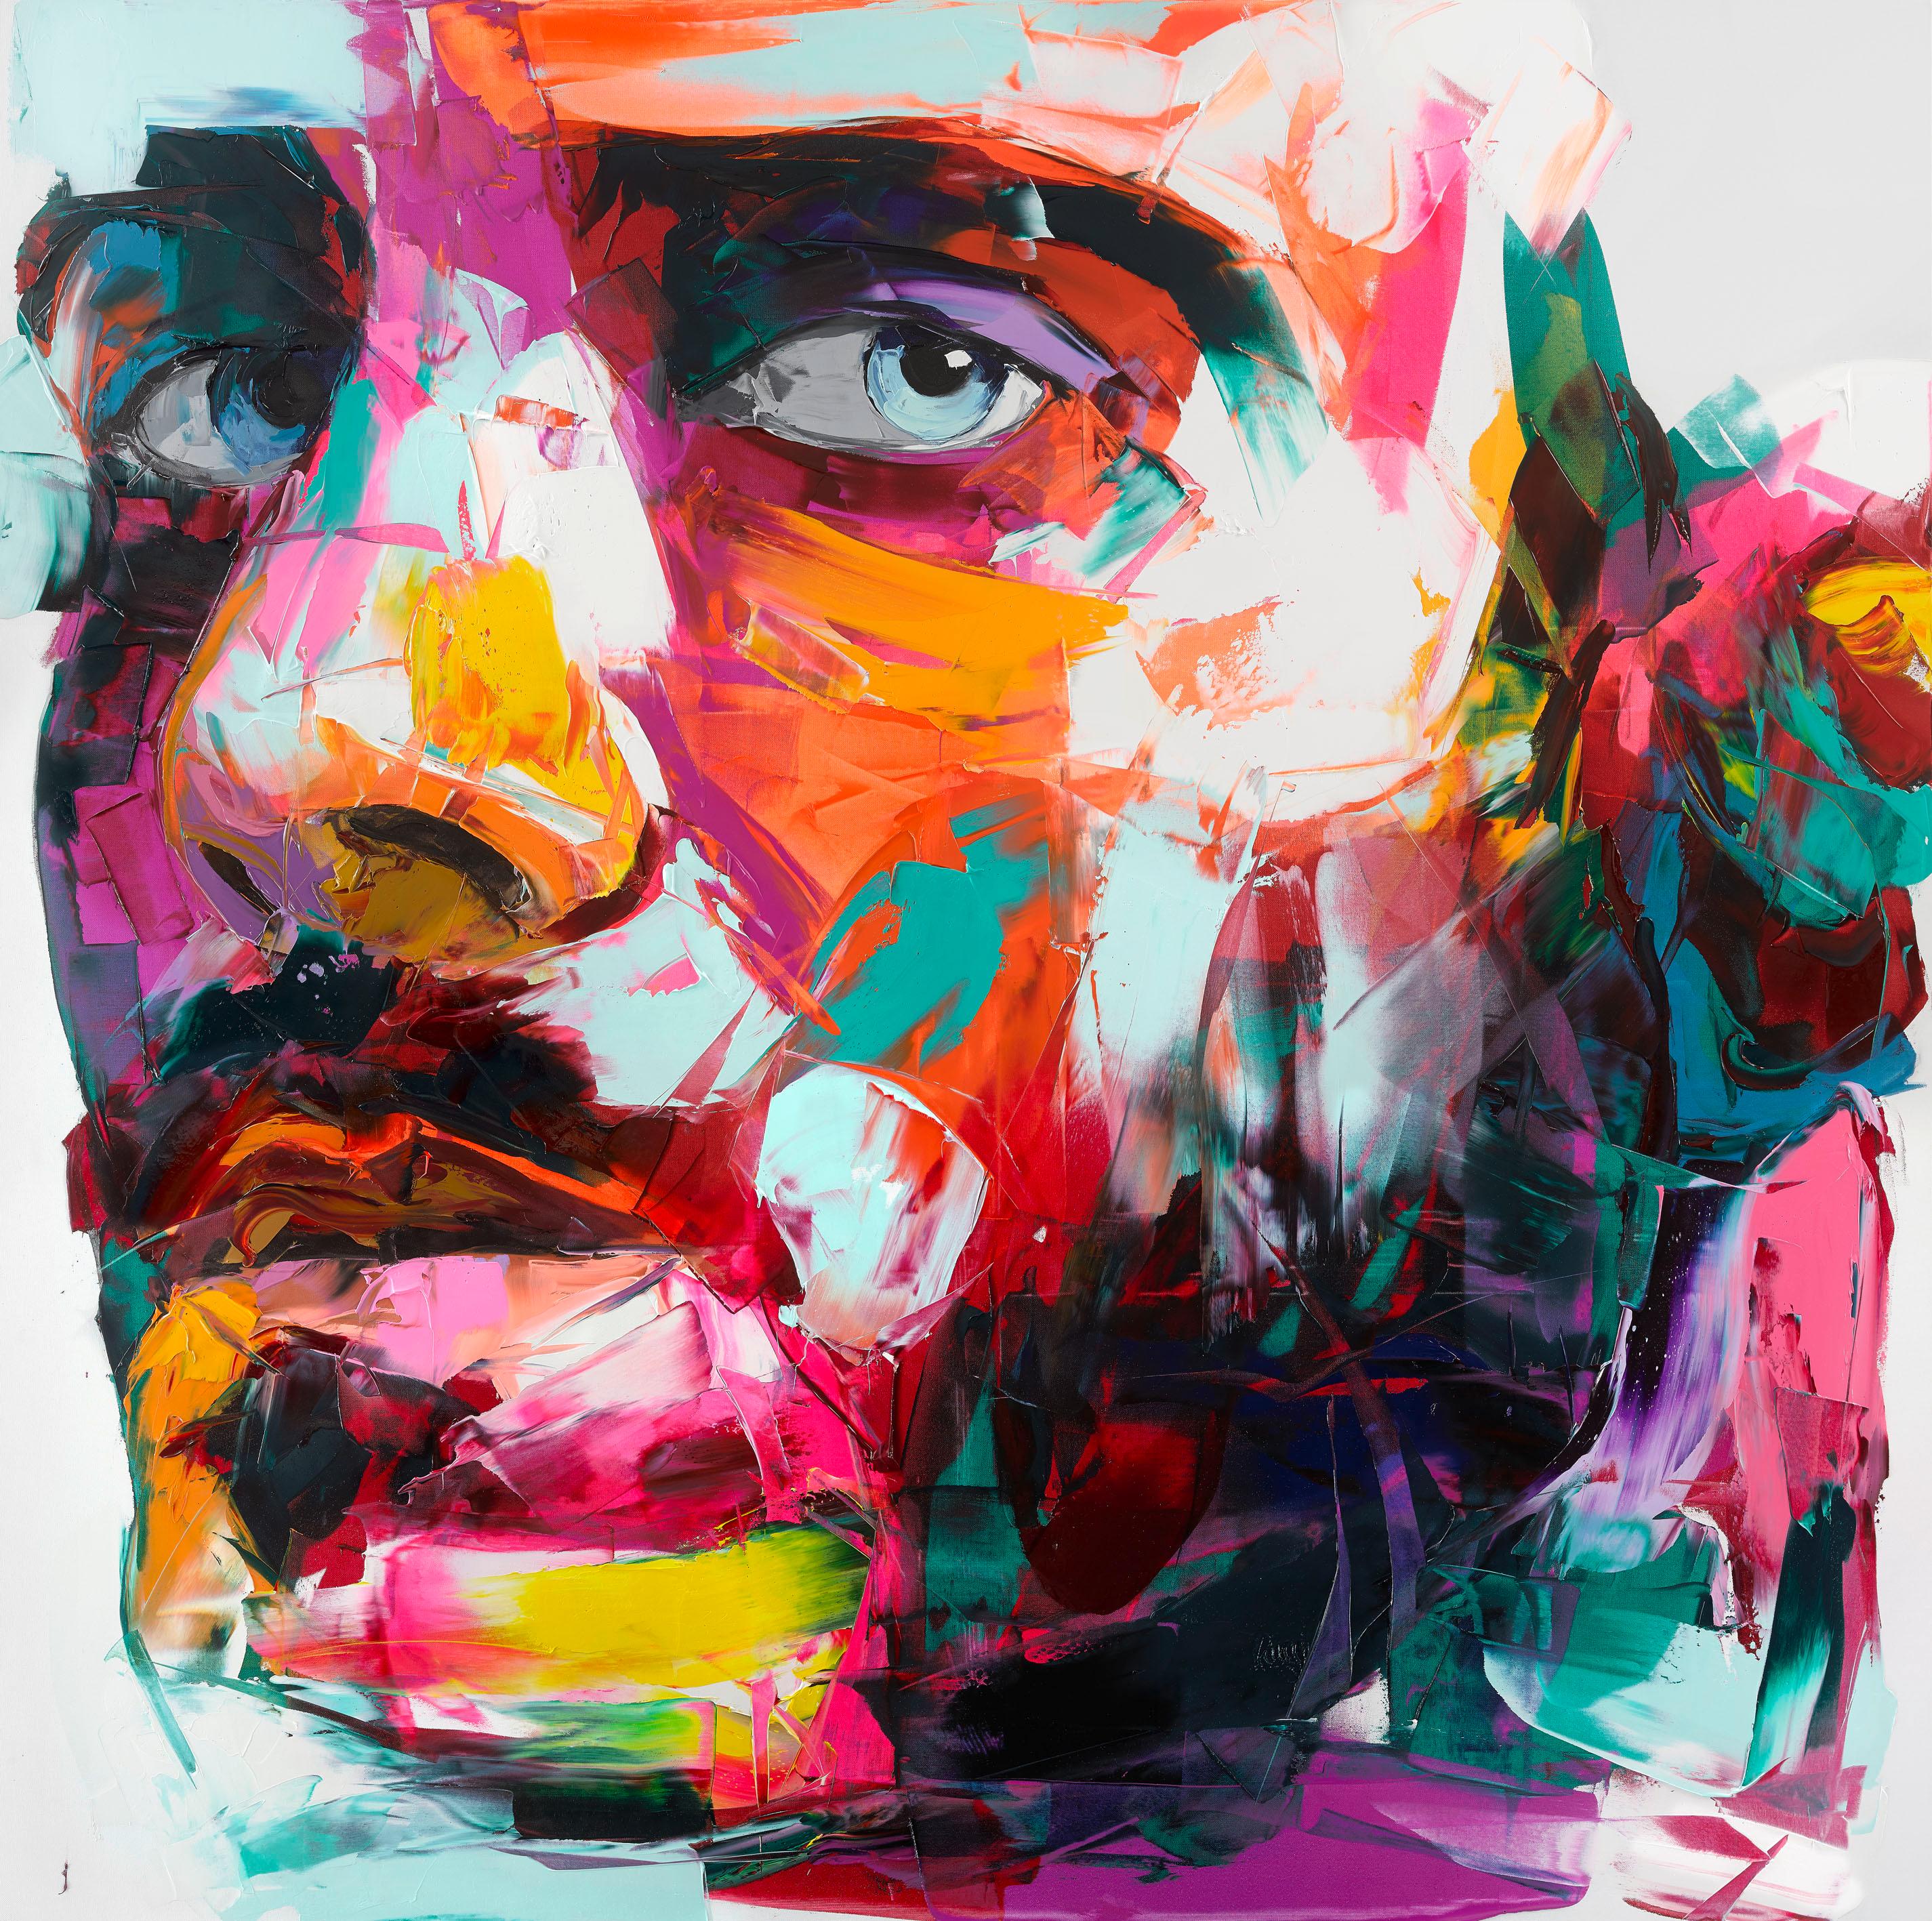 Michael - 21st Century, Contemporary, Figurative, Oil Painting, Portrait, Pop